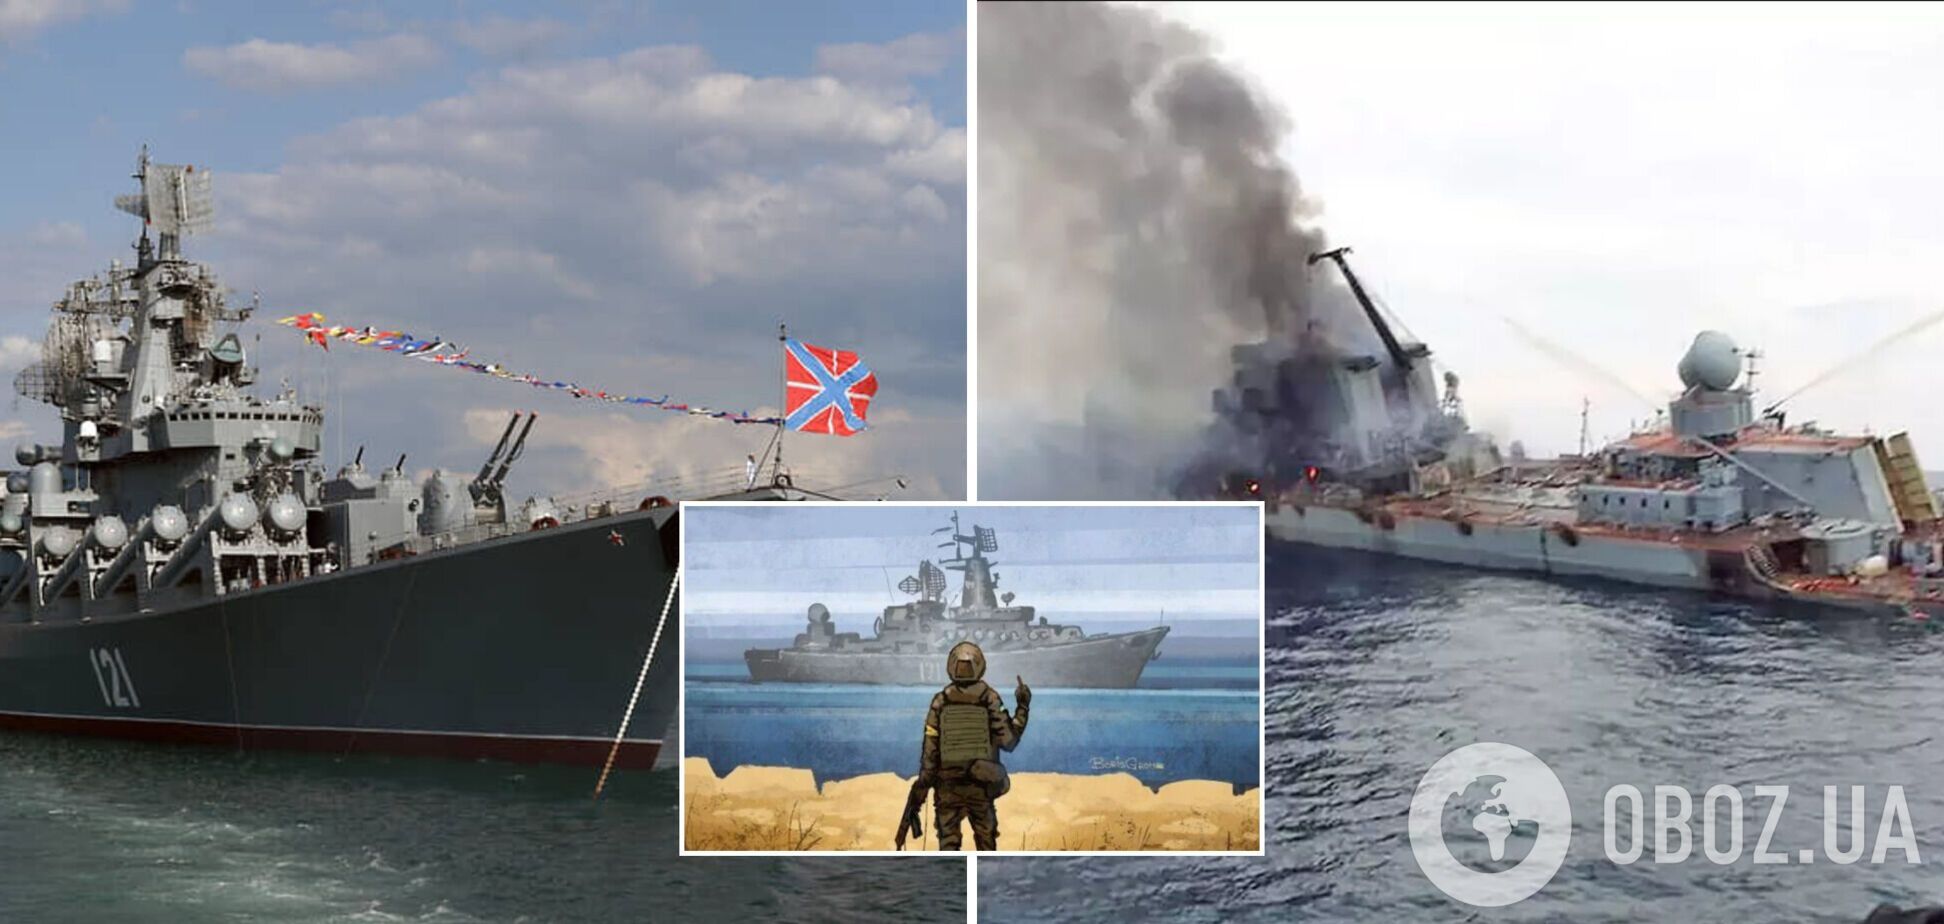 'Там було багато трупів': моряк, який потрапив у полон ЗСУ, розповів про катастрофу крейсера 'Москва'. Аудіо